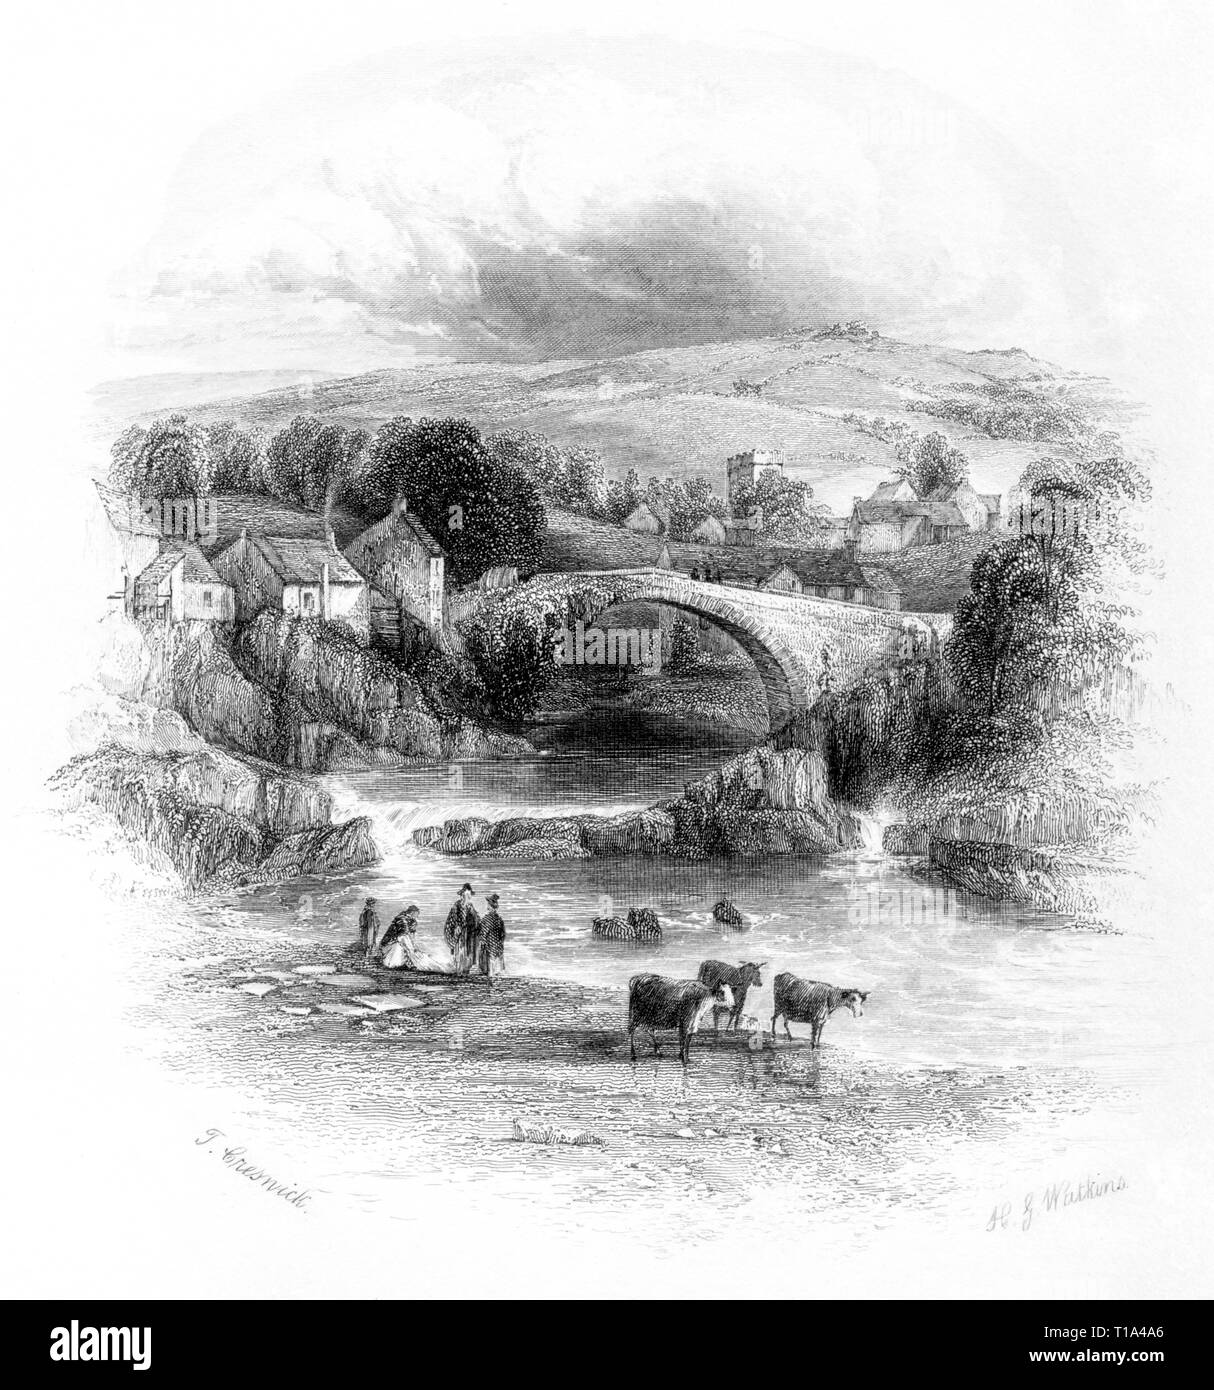 Ein Kupferstich von Rhayader, Powys, Wales UK gescannt und in hoher Auflösung aus einem Buch 1841 veröffentlicht. Dieses Bild wird geglaubt, frei von Copyright. Stockfoto